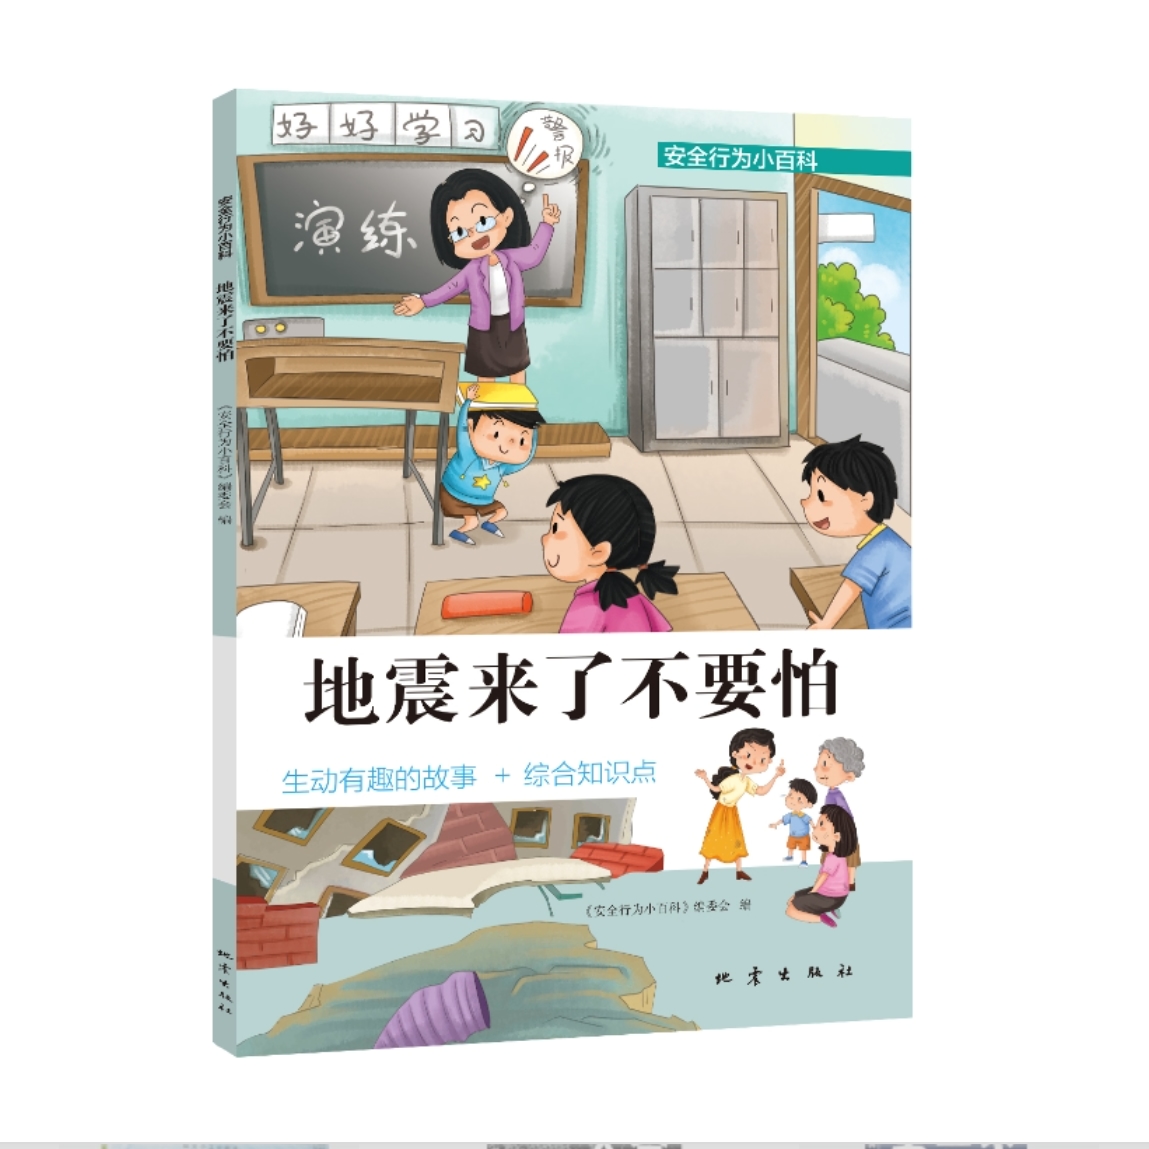 地震来了不要怕：这本书告诉孩子，特别重要的防震减灾常识！